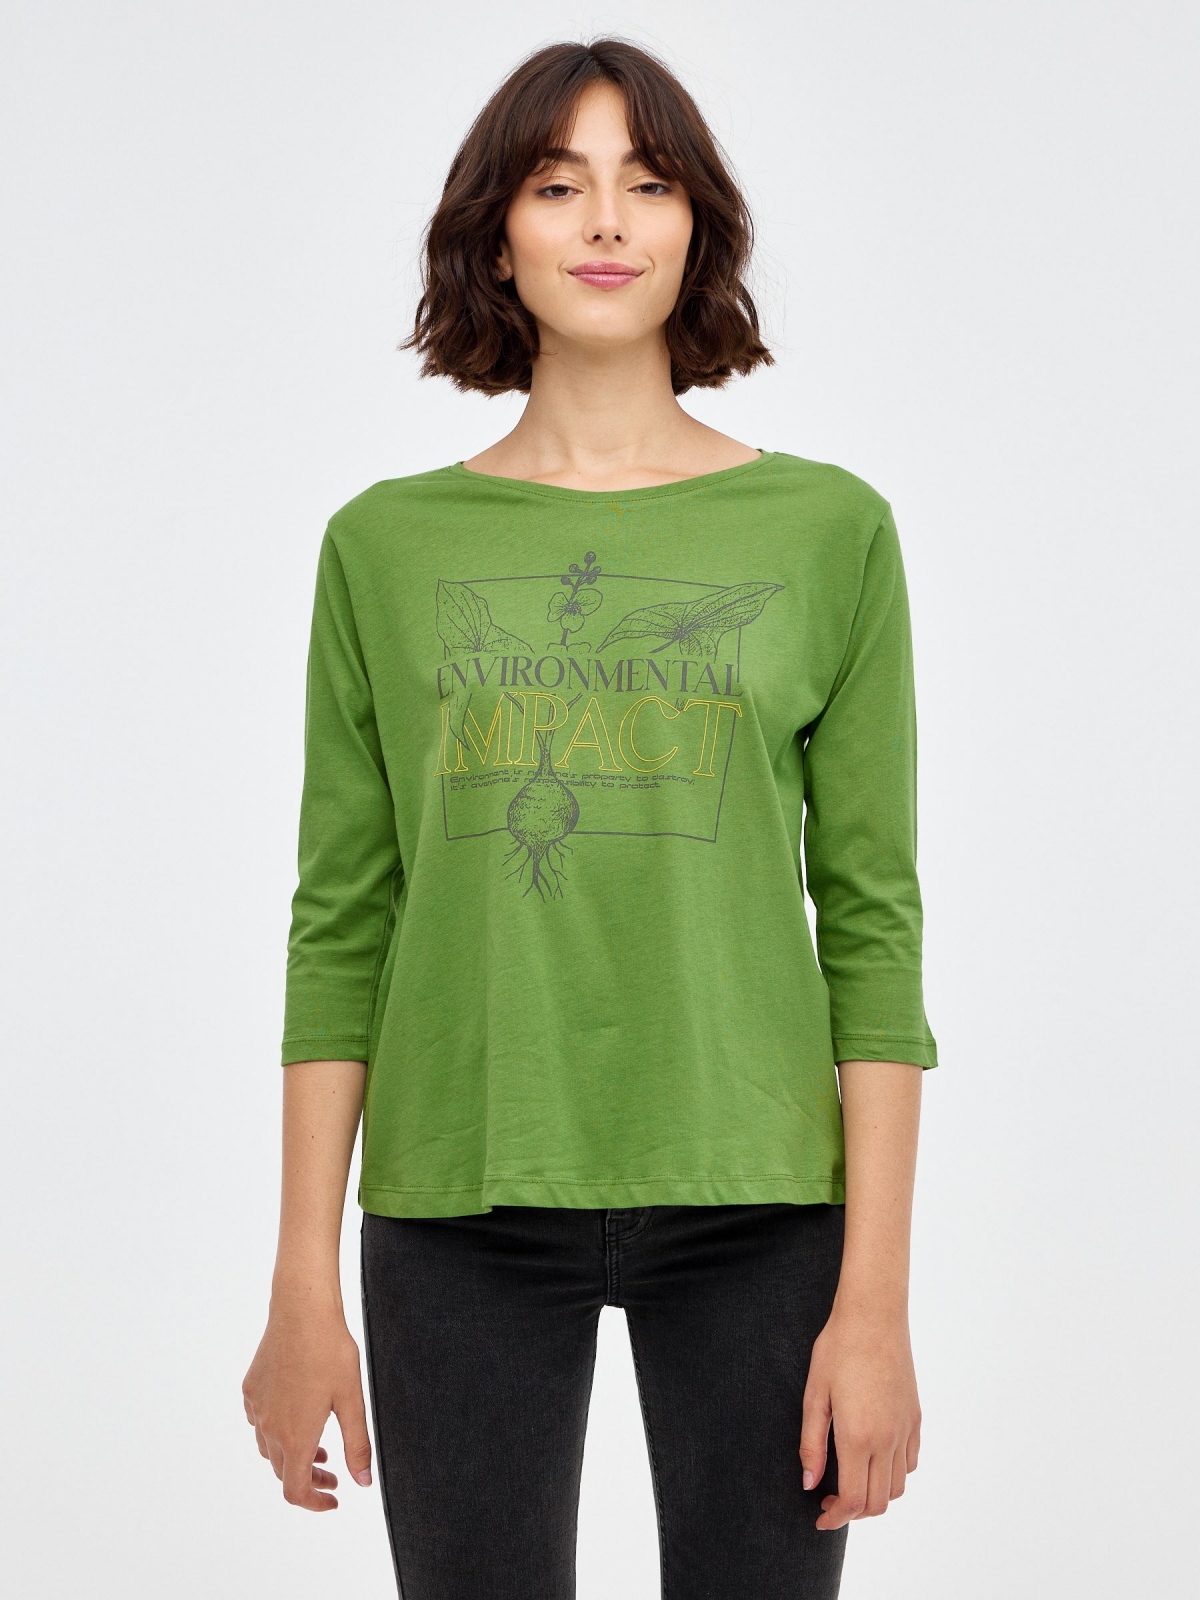 Camiseta Environmental verde oliva vista media frontal